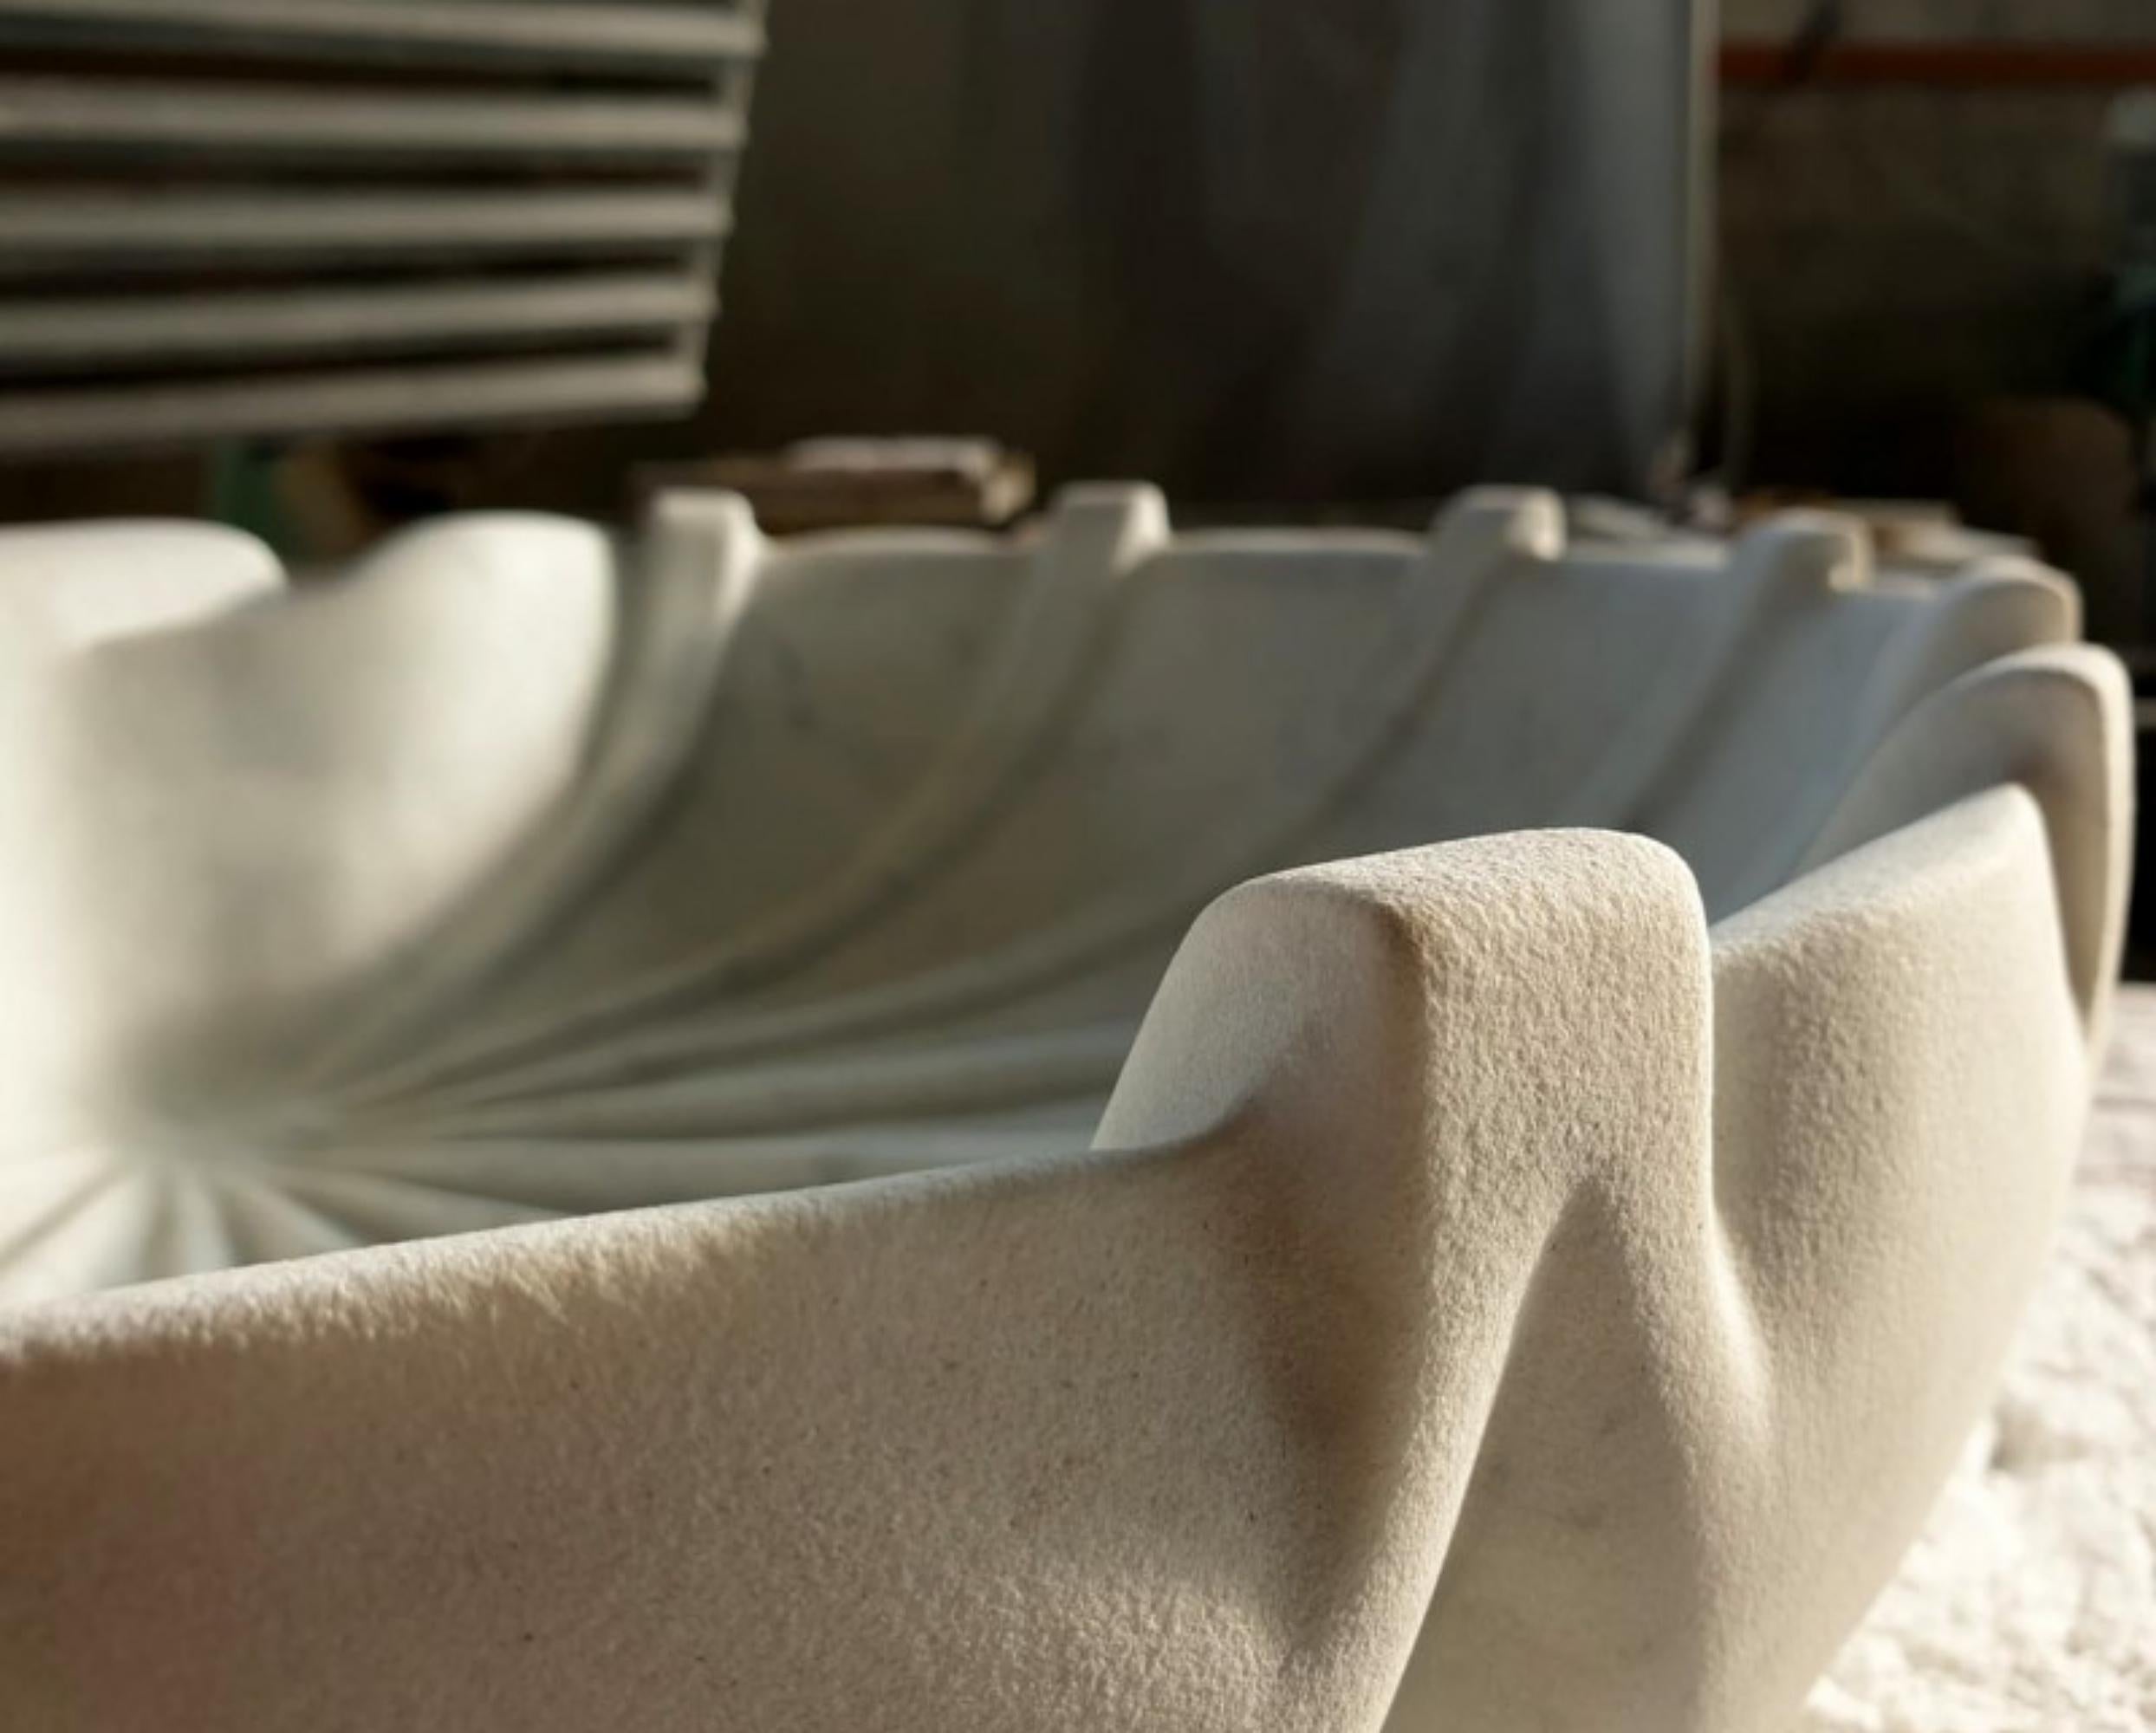 20ème siècle STATUARIO BLANC CORPS D'ÉCLAIRAGE EN MARBRE
Italie
Fabriqué à la main en marbre de Carrare blanc statuaire
HAUTEUR 15cm
LARGEUR 52cm
Profondeur 50cm
MATERIAL Marbre blanc de Carrare